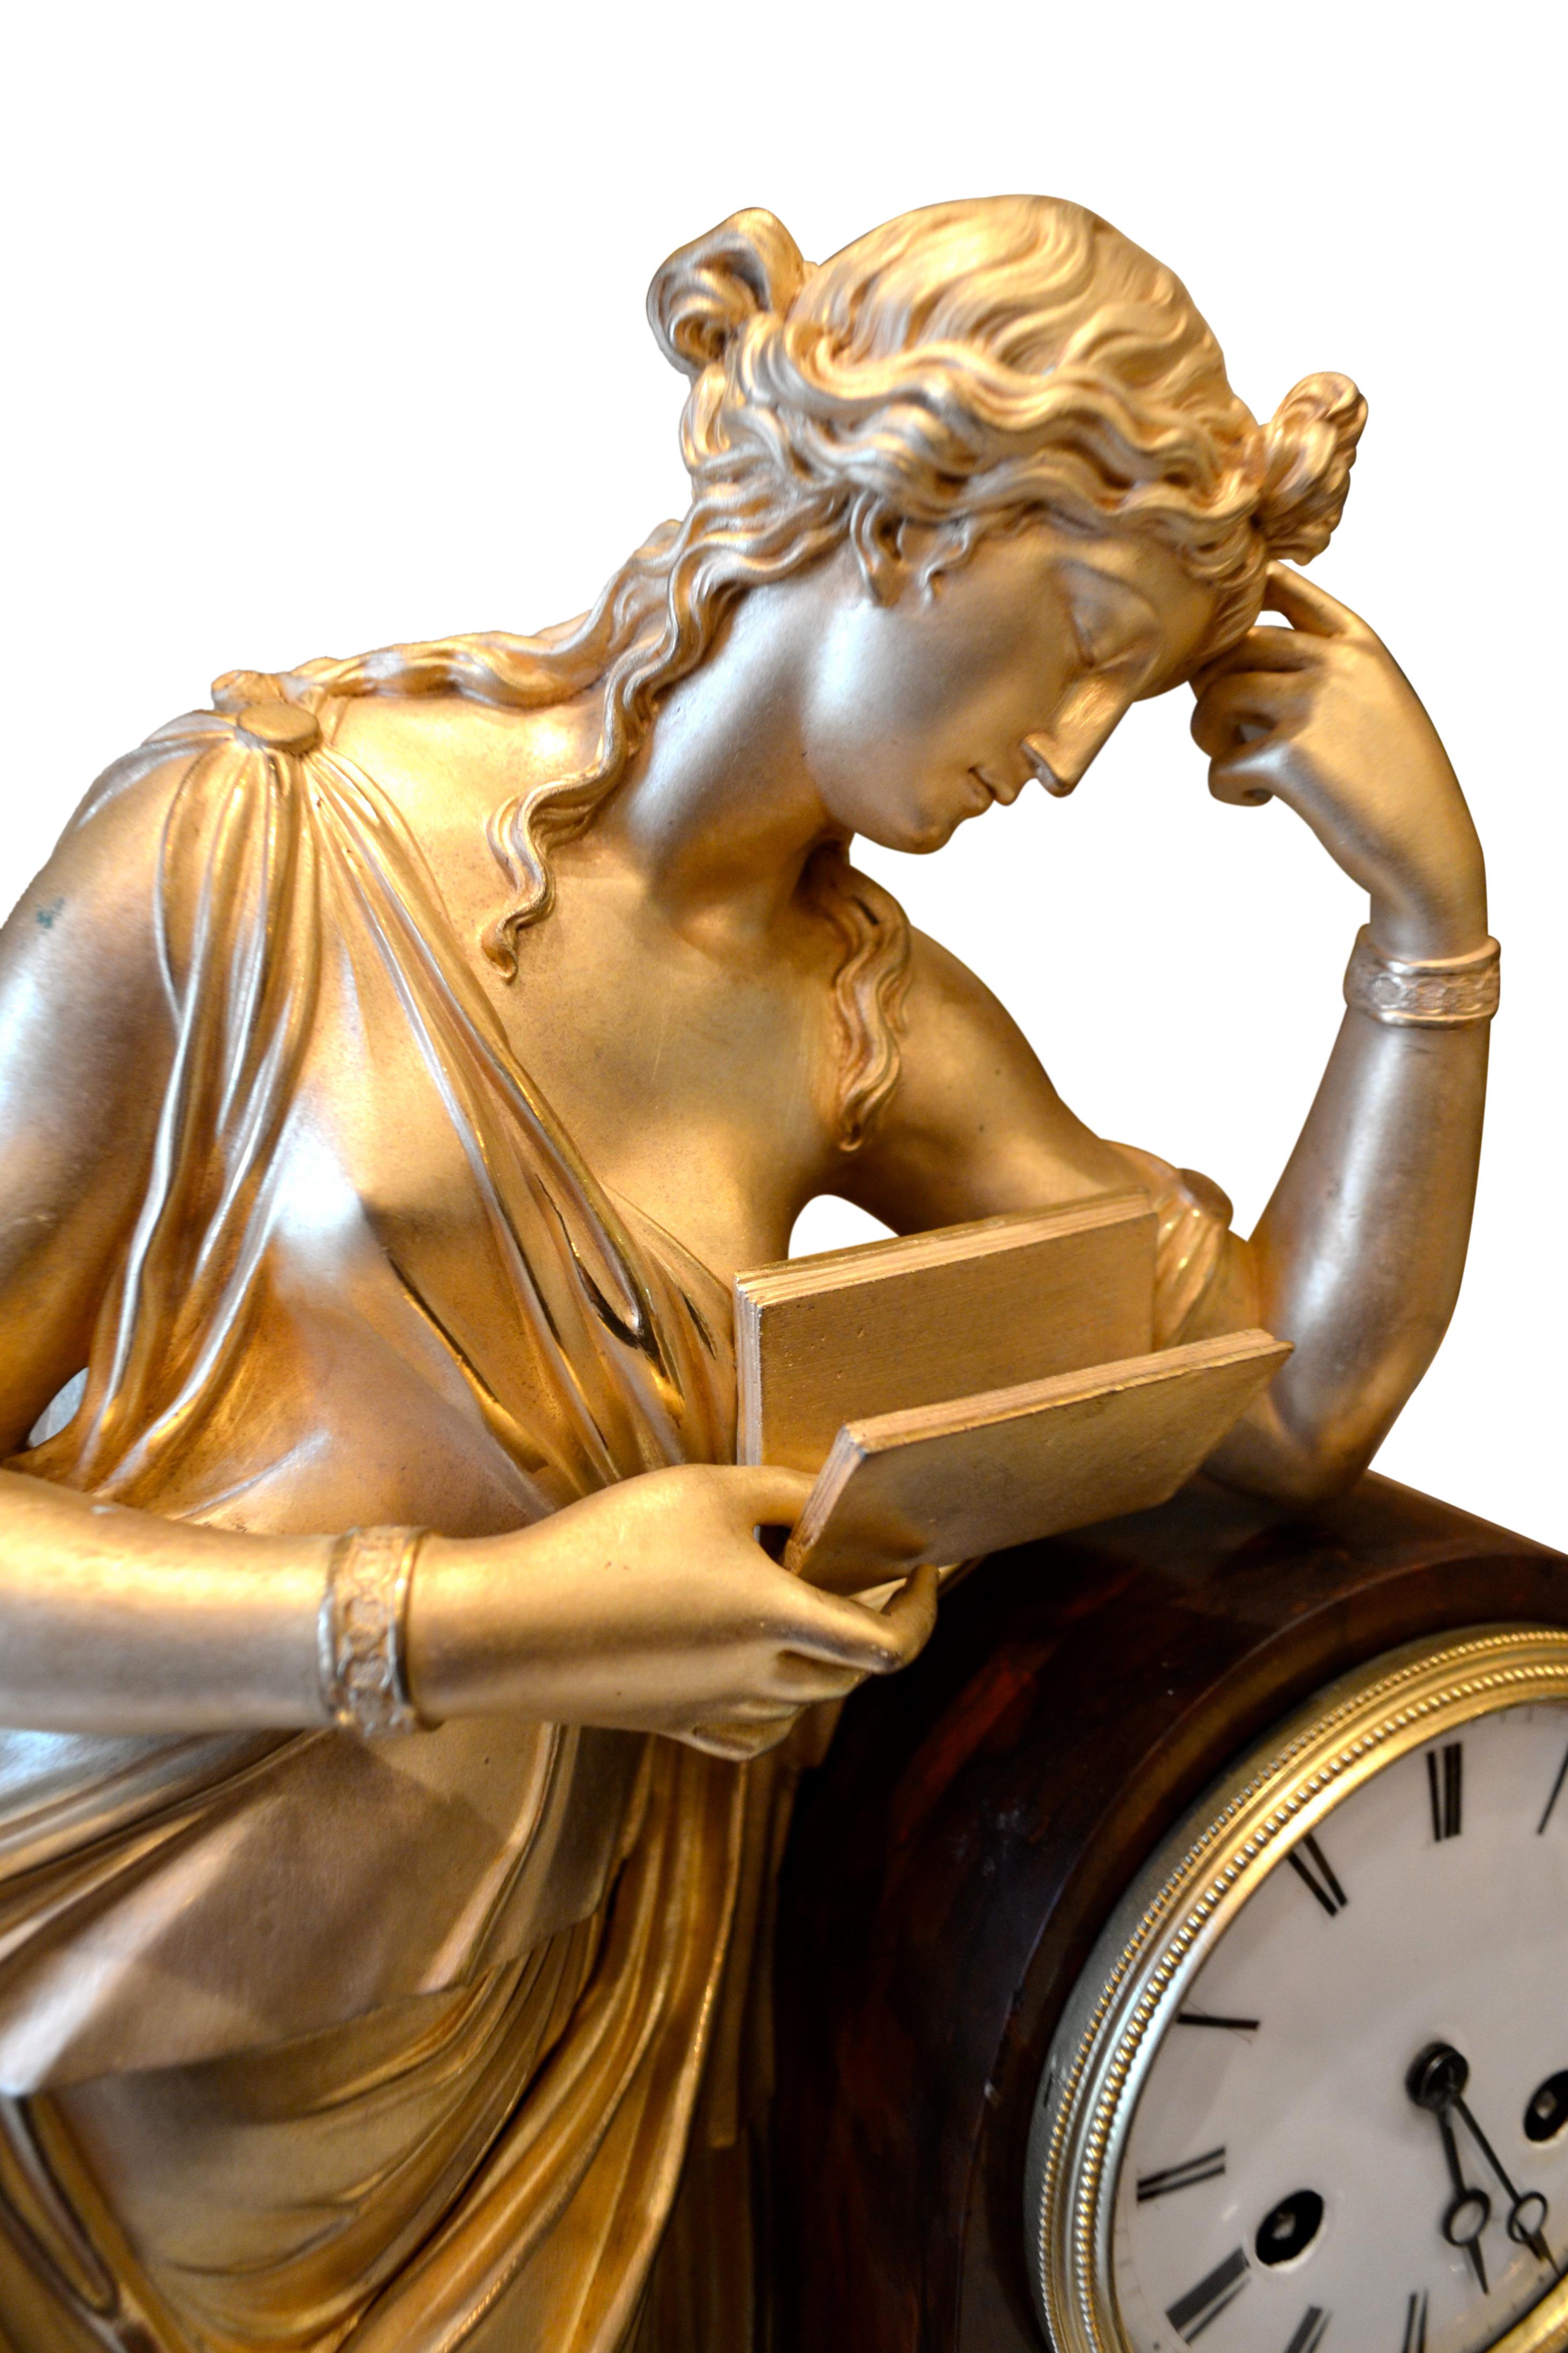 Une pendule allégorique Louis Philippe en bronze doré et marbre représentant Clio, la muse grecque de l'histoire. La figure debout d'une Clio dorée est représentée appuyée contre le socle de l'horloge, lisant un livre d'une main, l'autre main étant